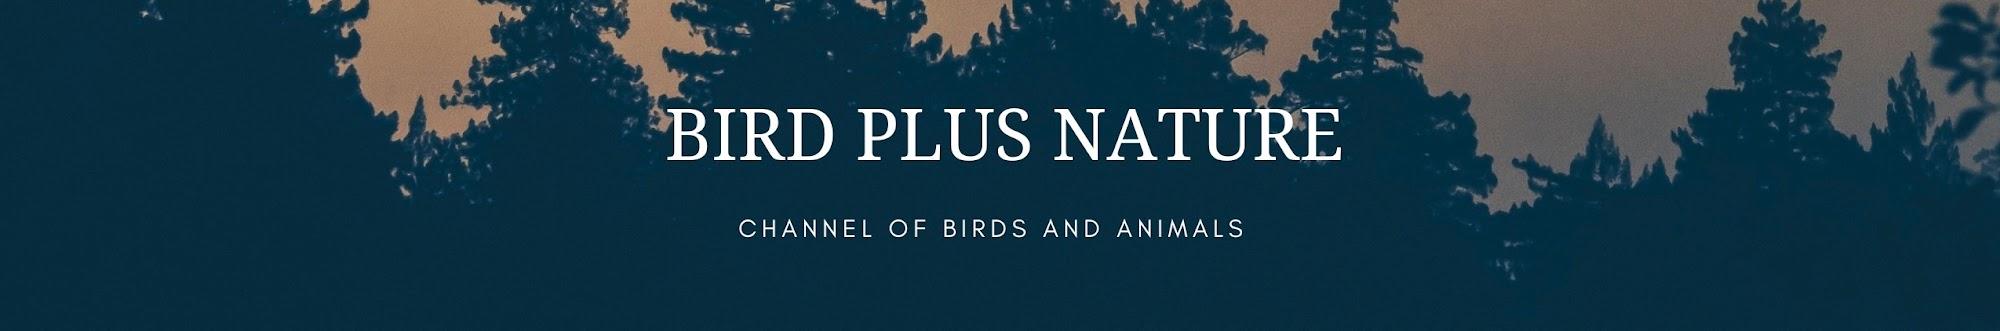 Bird Plus Nature